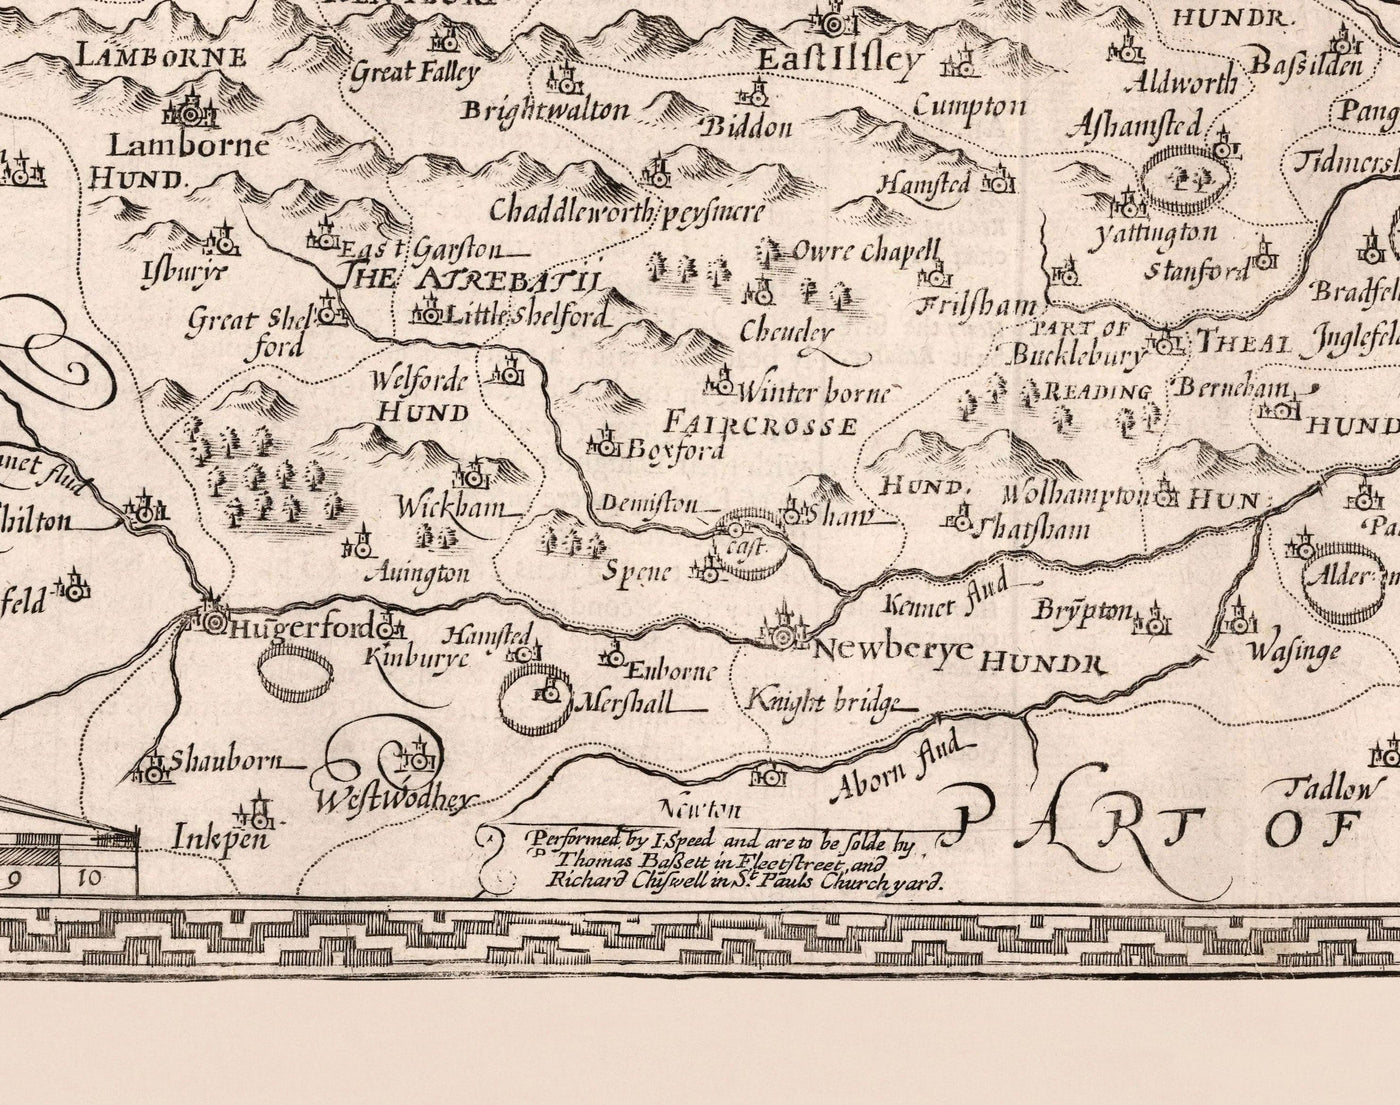 Alte monochrome Karte von Berkshire 1611 von John Speed ​​- Lesen, Slough, Bracknell, Maidenhead, Henley, Eton, Windsor Castle